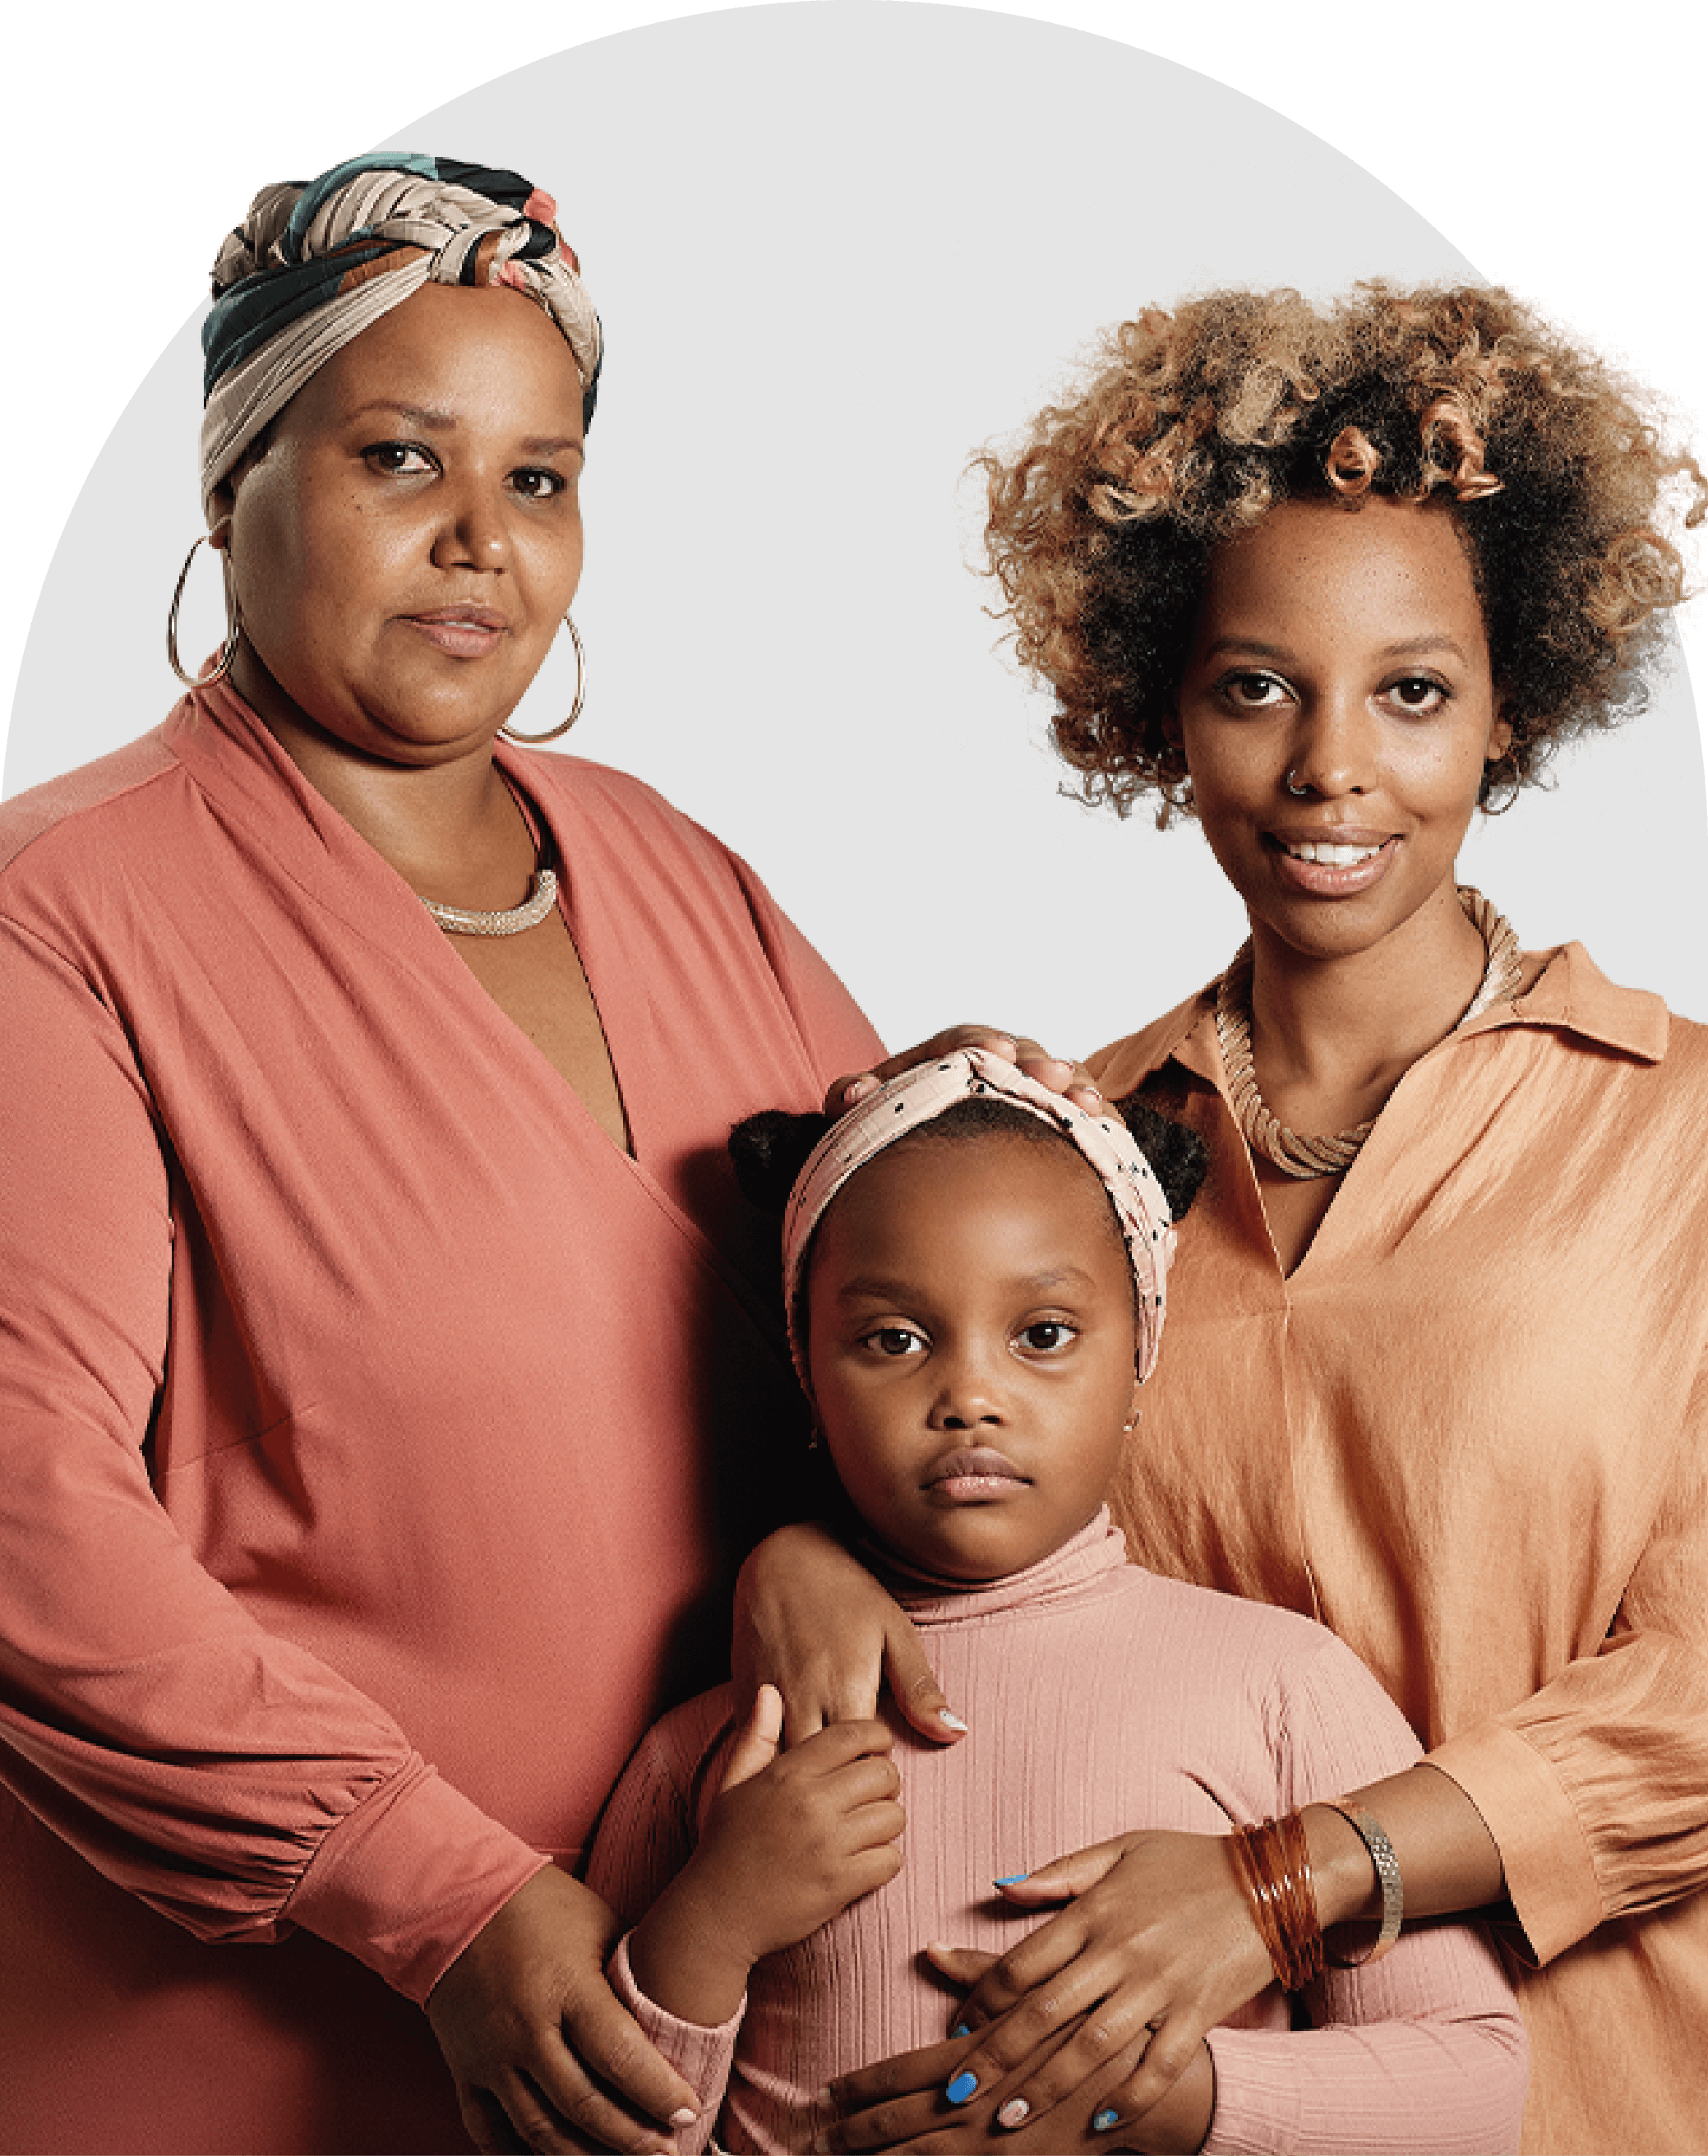 Foto de três mulheres negras, de três gerações diferentes. A primeira, mais velha, usa um turbante na cabeça com um vestido coral, a segunda usa os cabelos soltos com uma camisa laranja e a terceira é uma criança que usa roupas rosas.